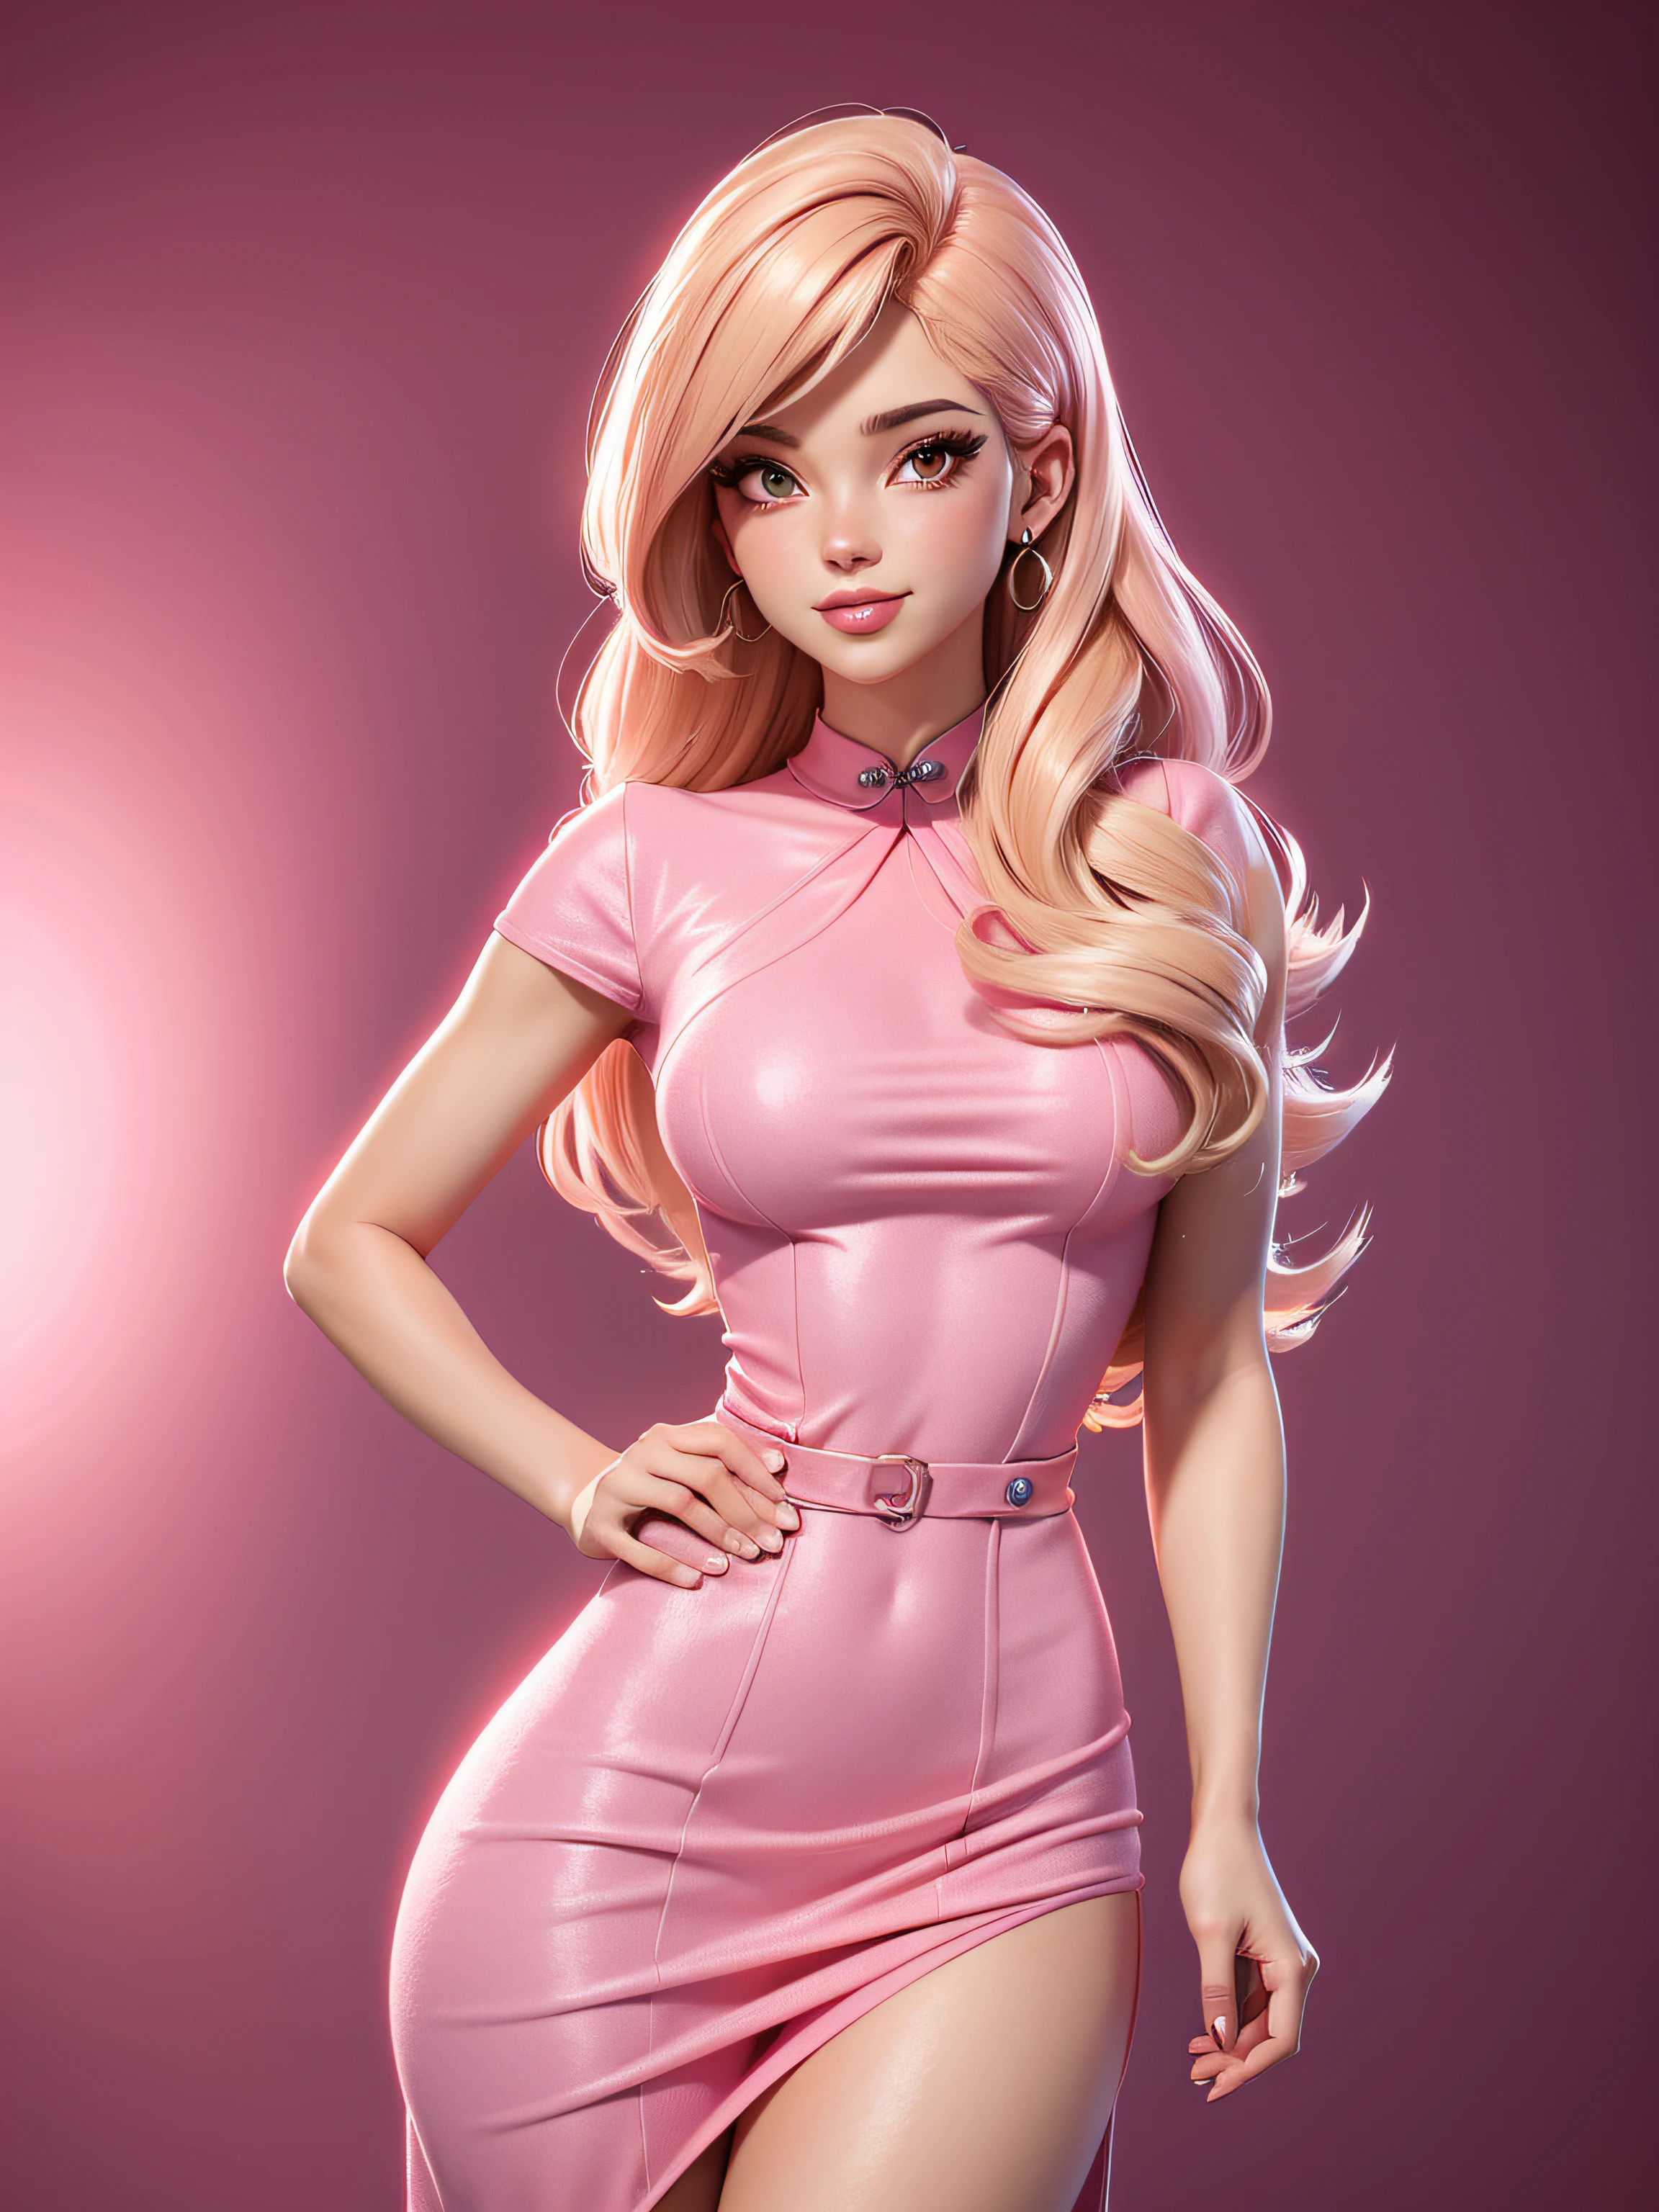  sexy corpo inteiro, vestido rosa, com brilho, cabelo loiro, olhar chamativo, Estilo dos desenhos animados dos anos 50, imagem vetorial, sem antecedentes, estilo clip-art